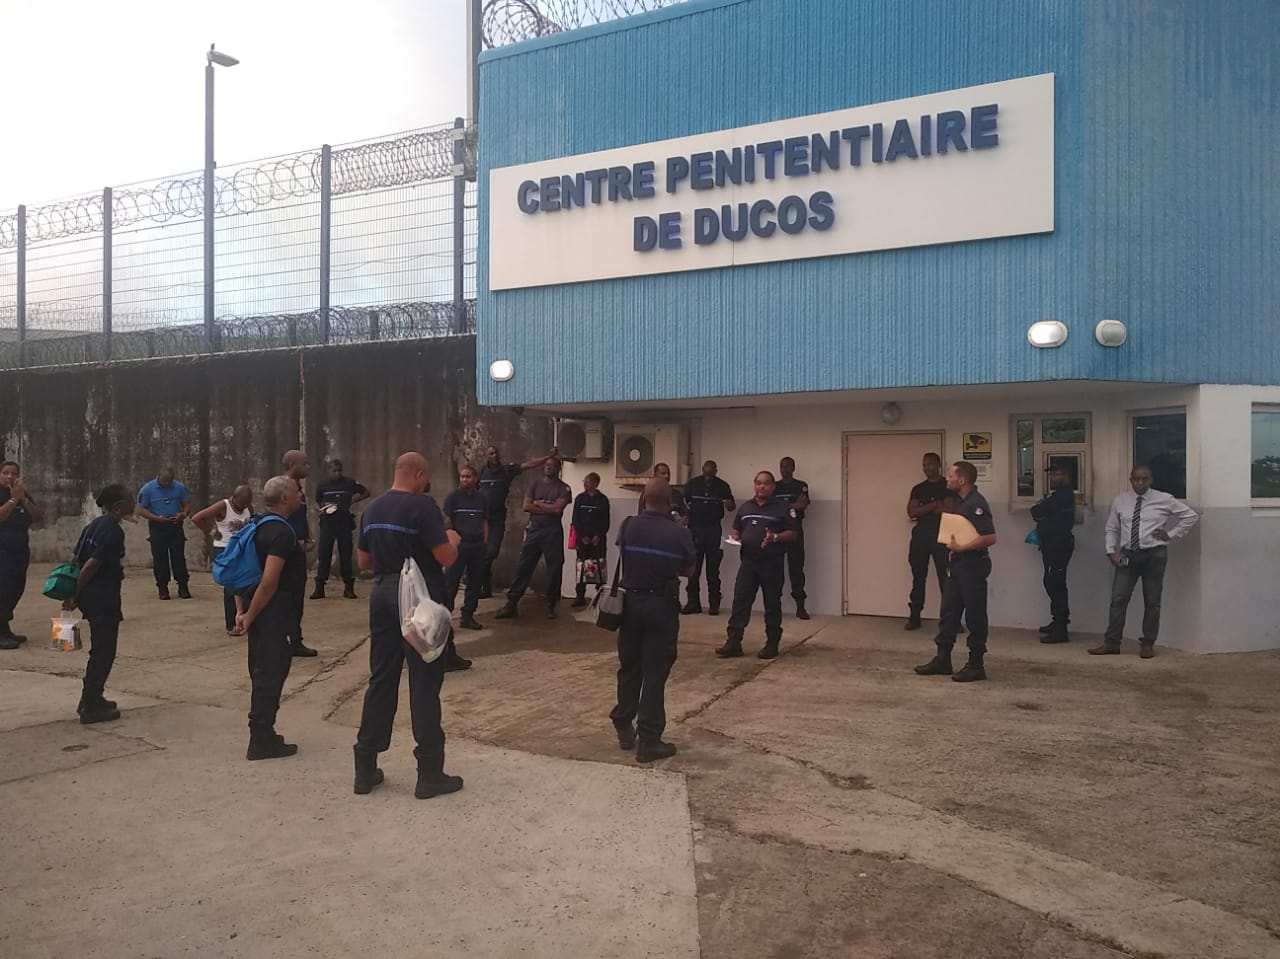     Des agents pénitentiaires mobilisés devant la prison de Ducos

